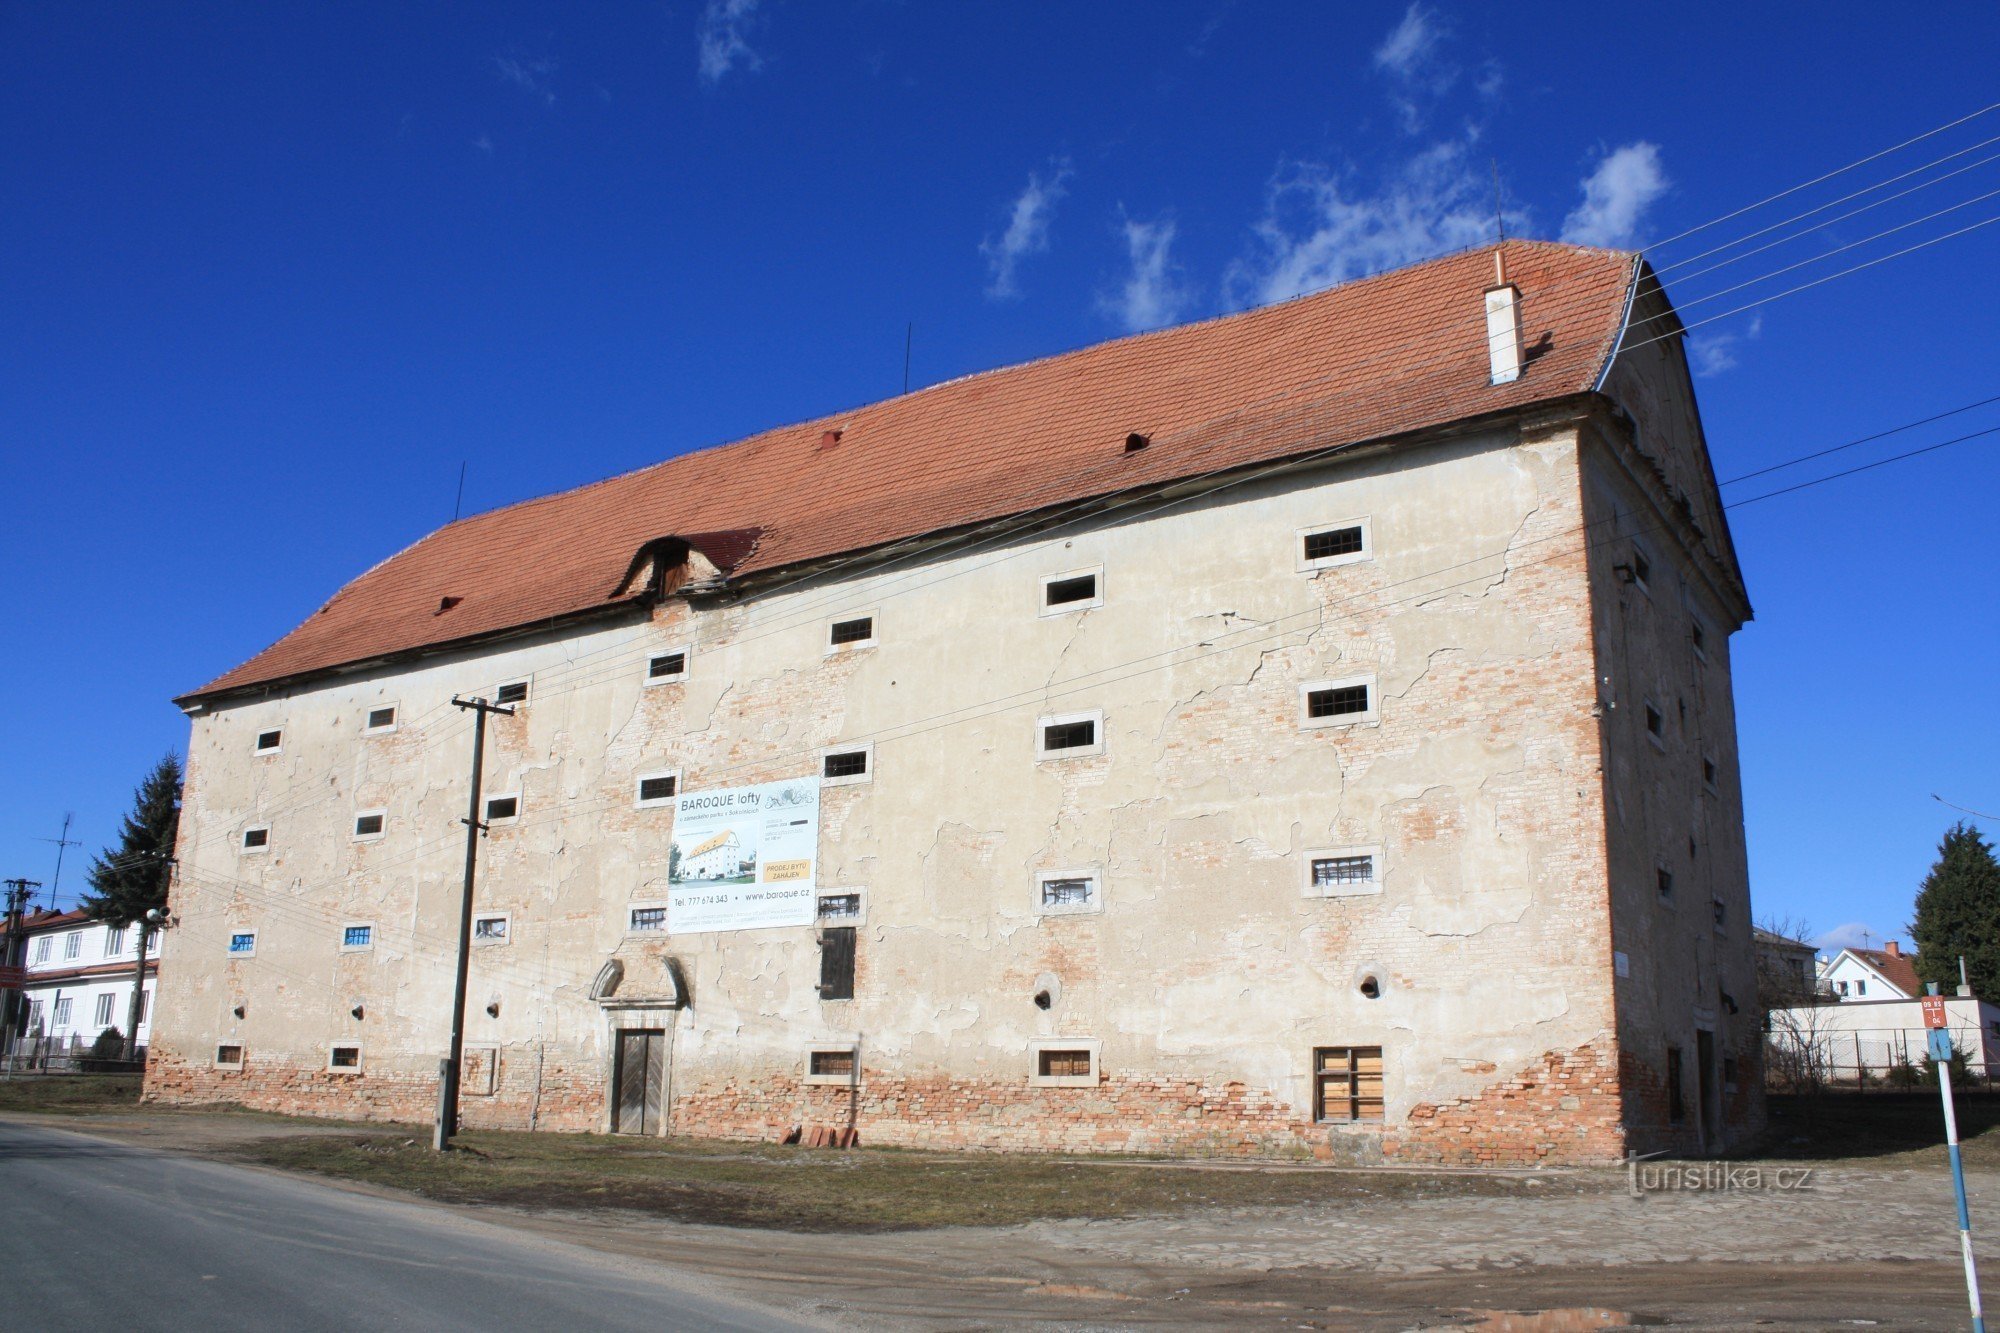 ソコルニツェ - バロック様式の城の穀倉地帯